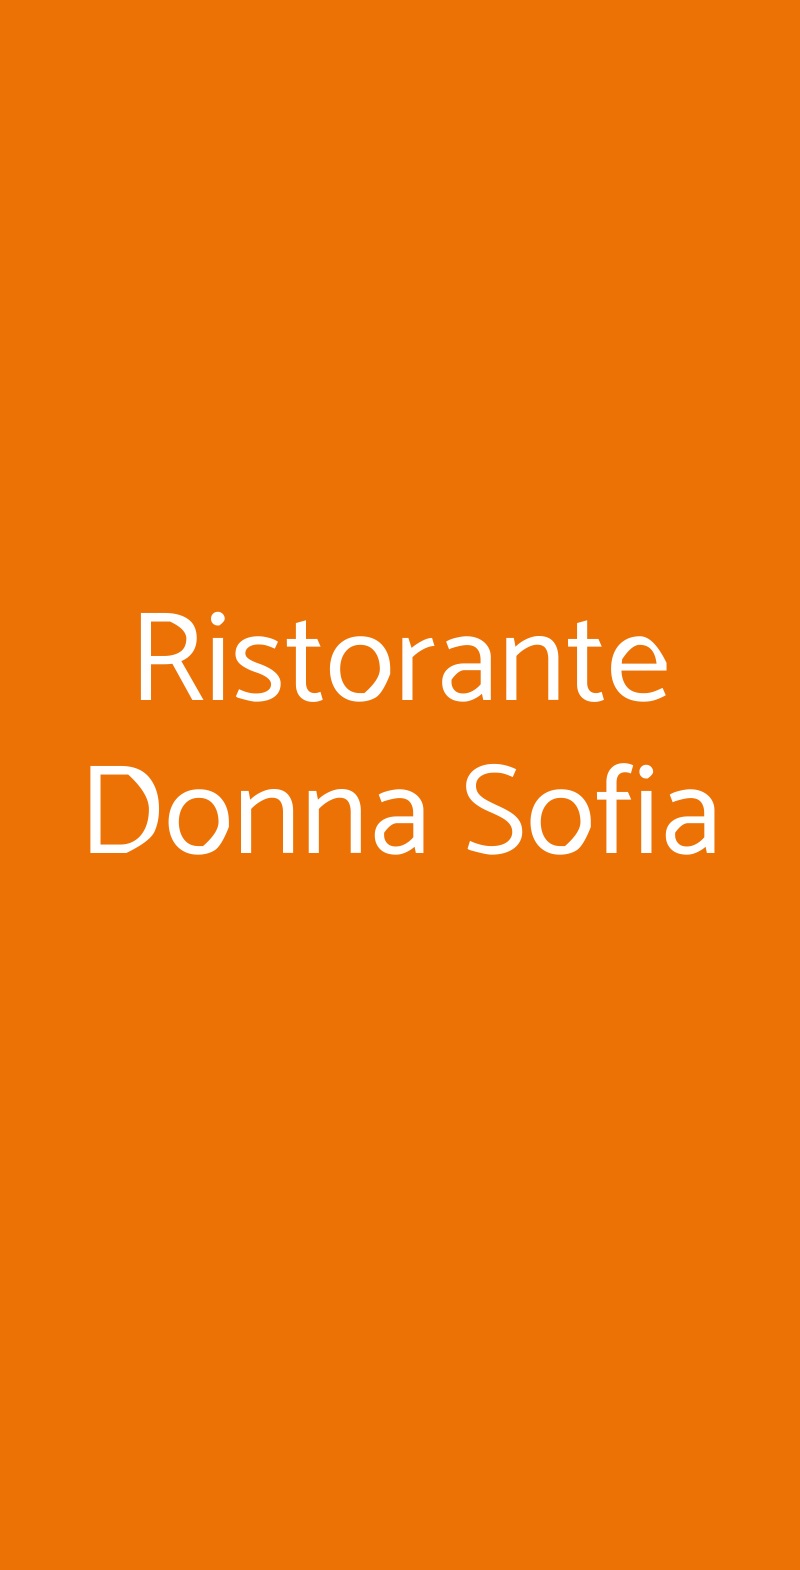 Ristorante Donna Sofia Sorrento menù 1 pagina